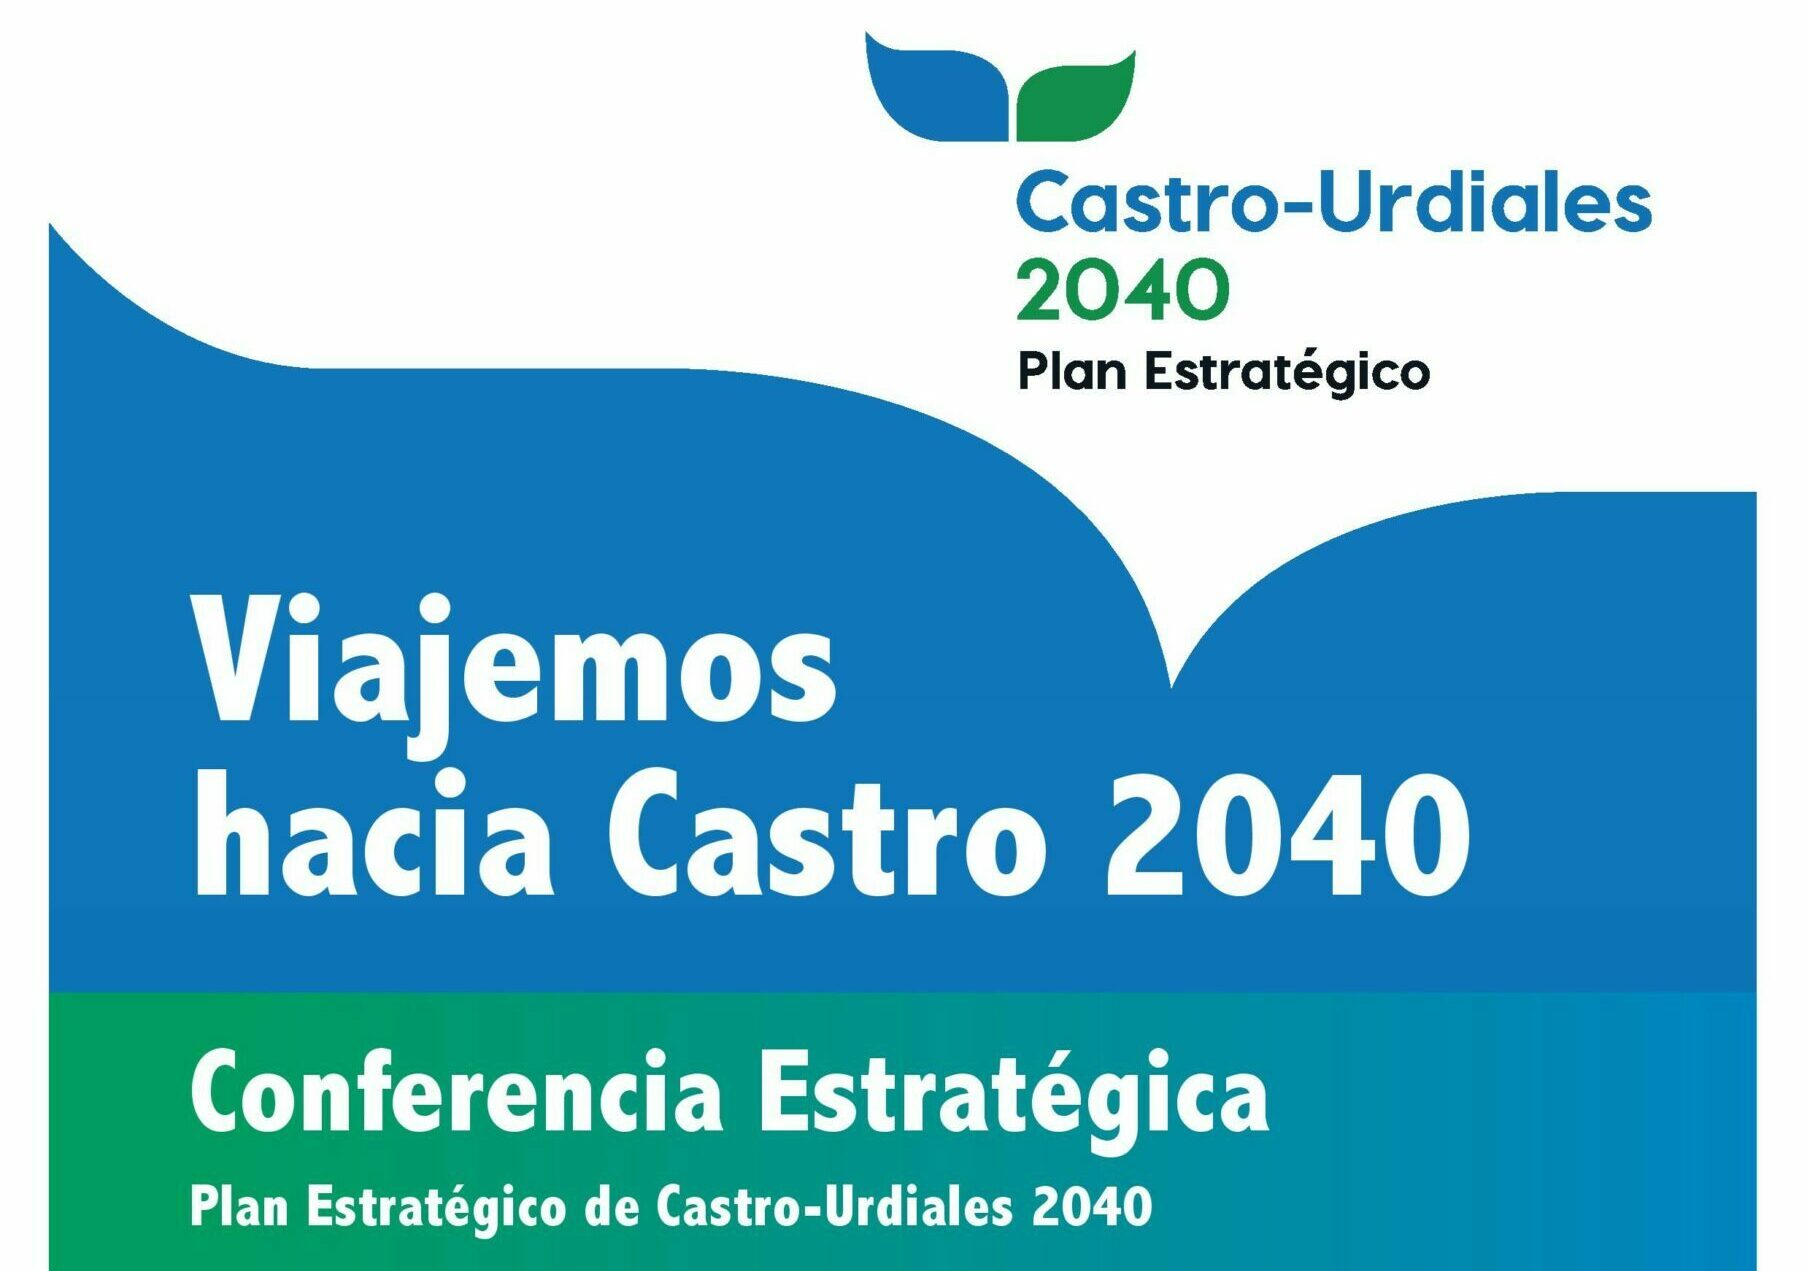 Mañana jueves se celebra la Conferencia Estratégica del Plan Castro-Urdiales 2040